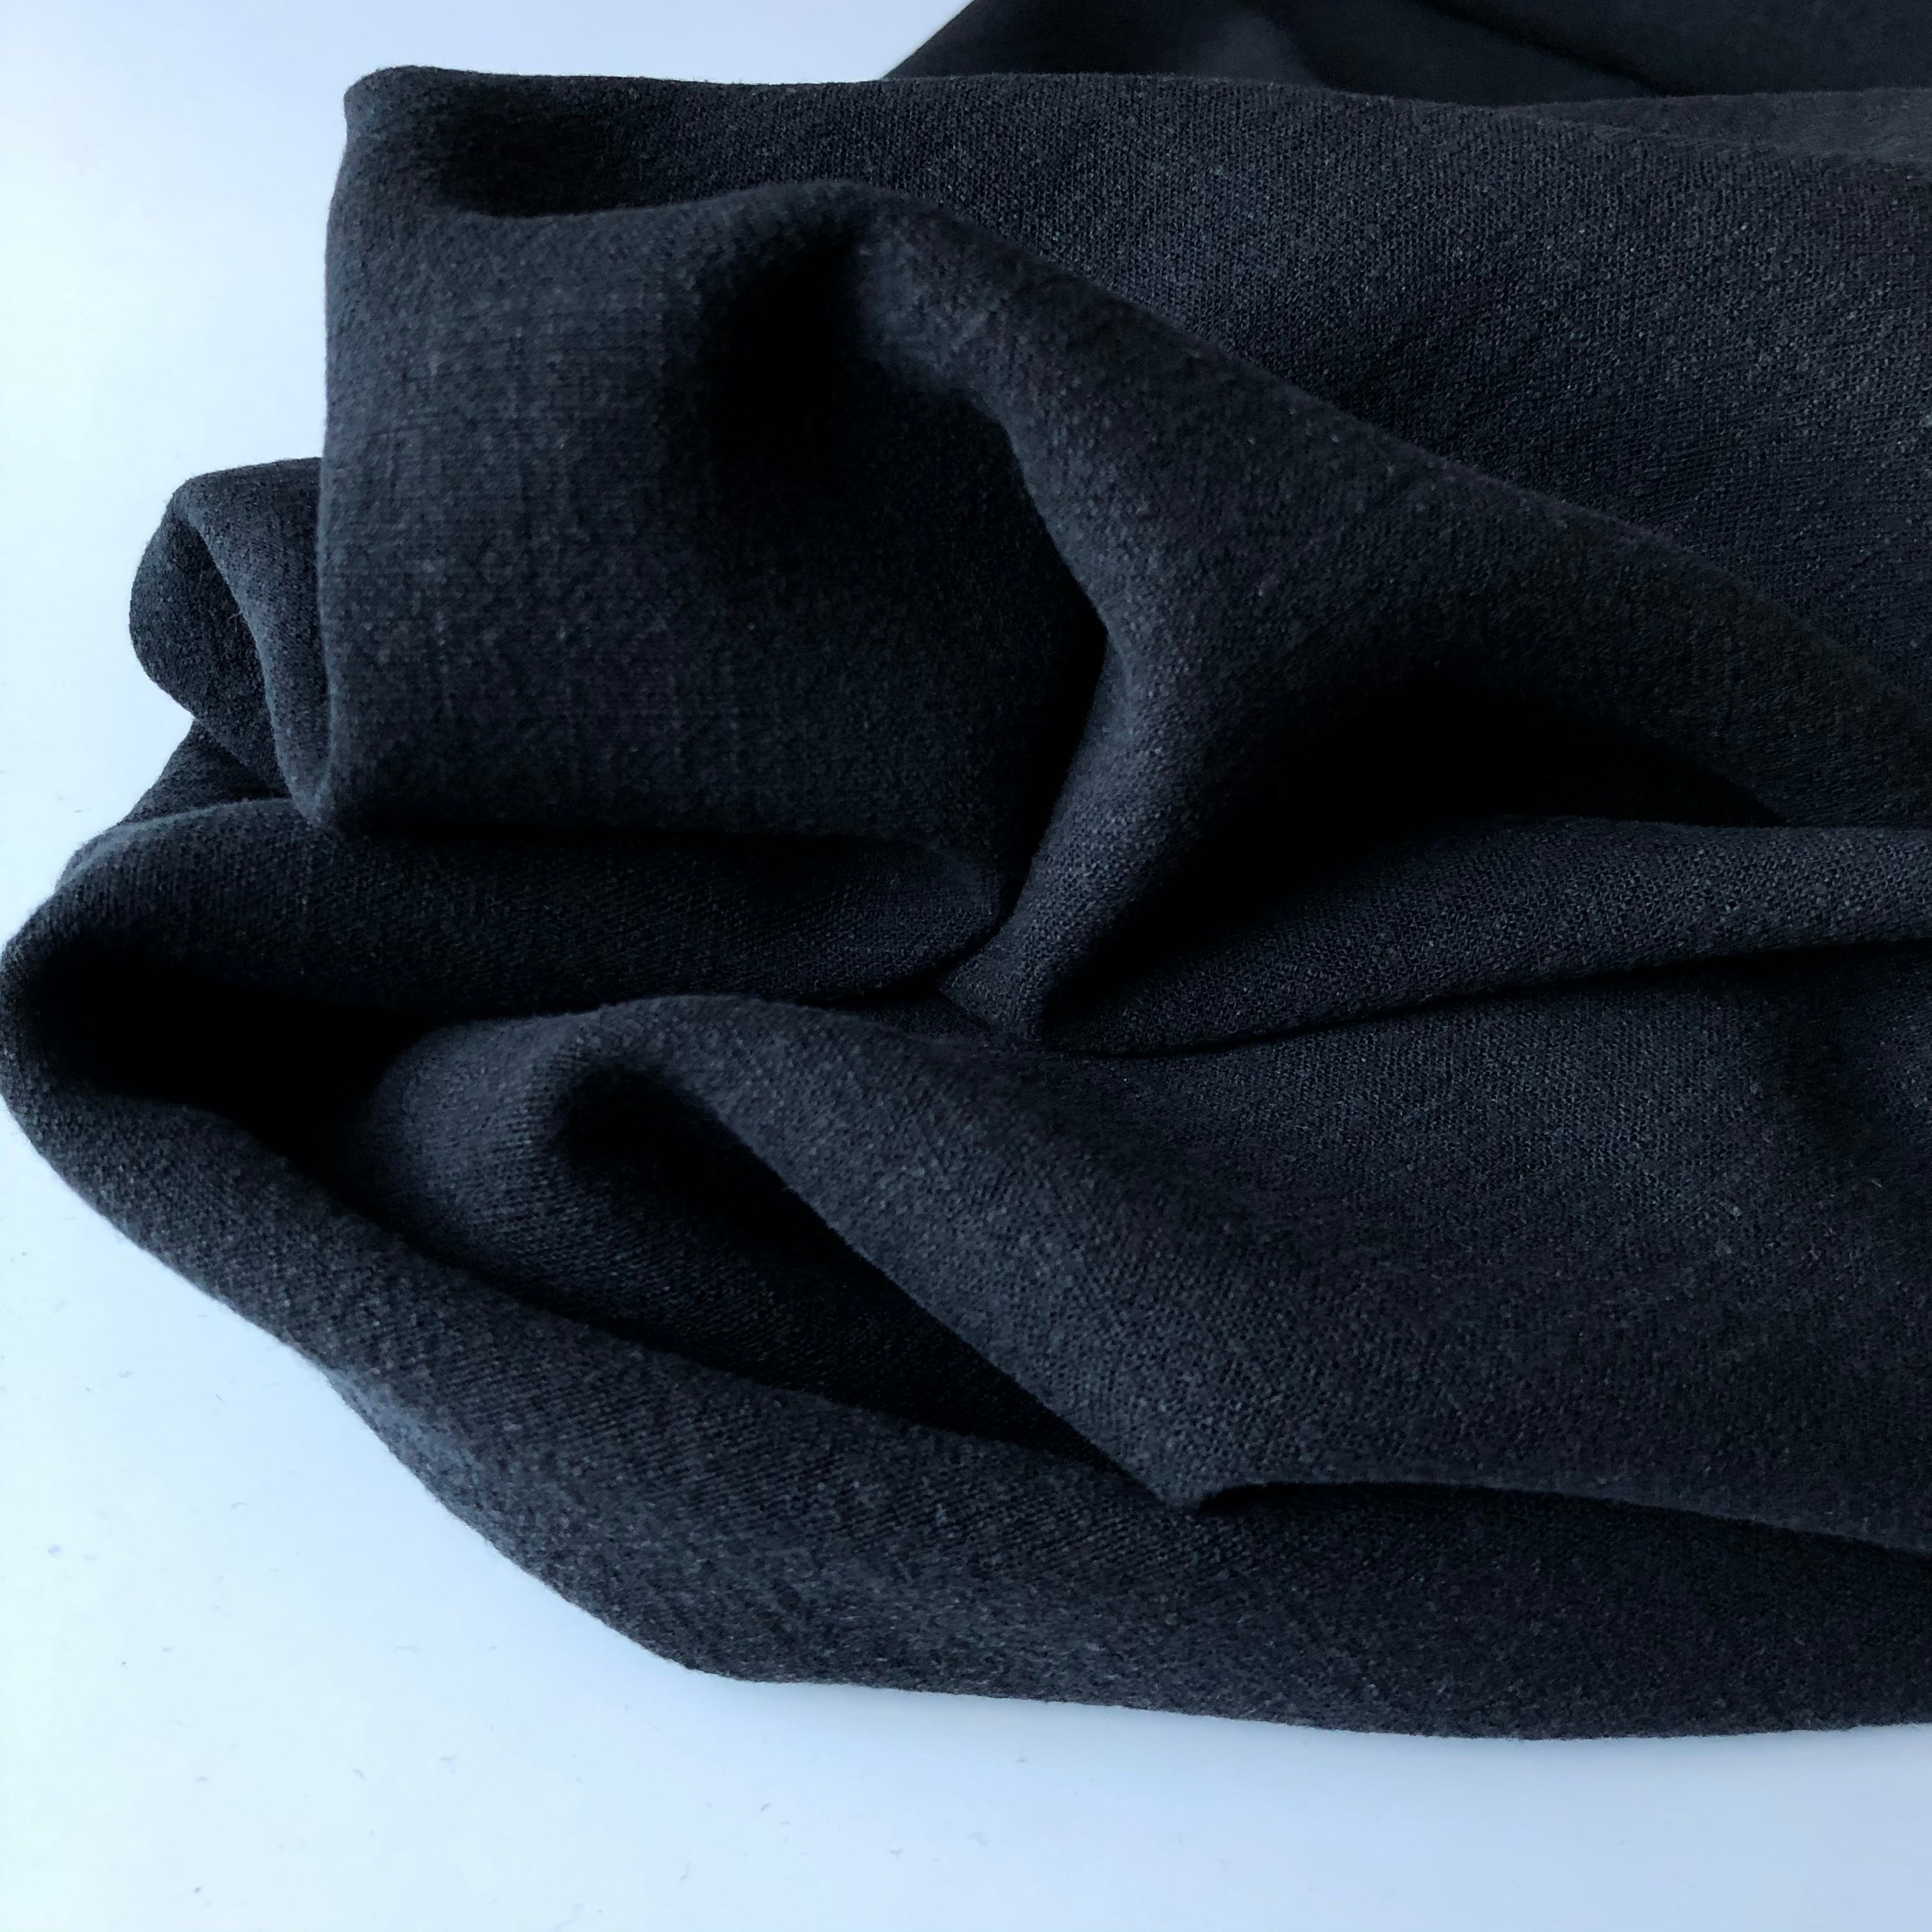 Flow Black Viscose Linen Blend Dress Fabric